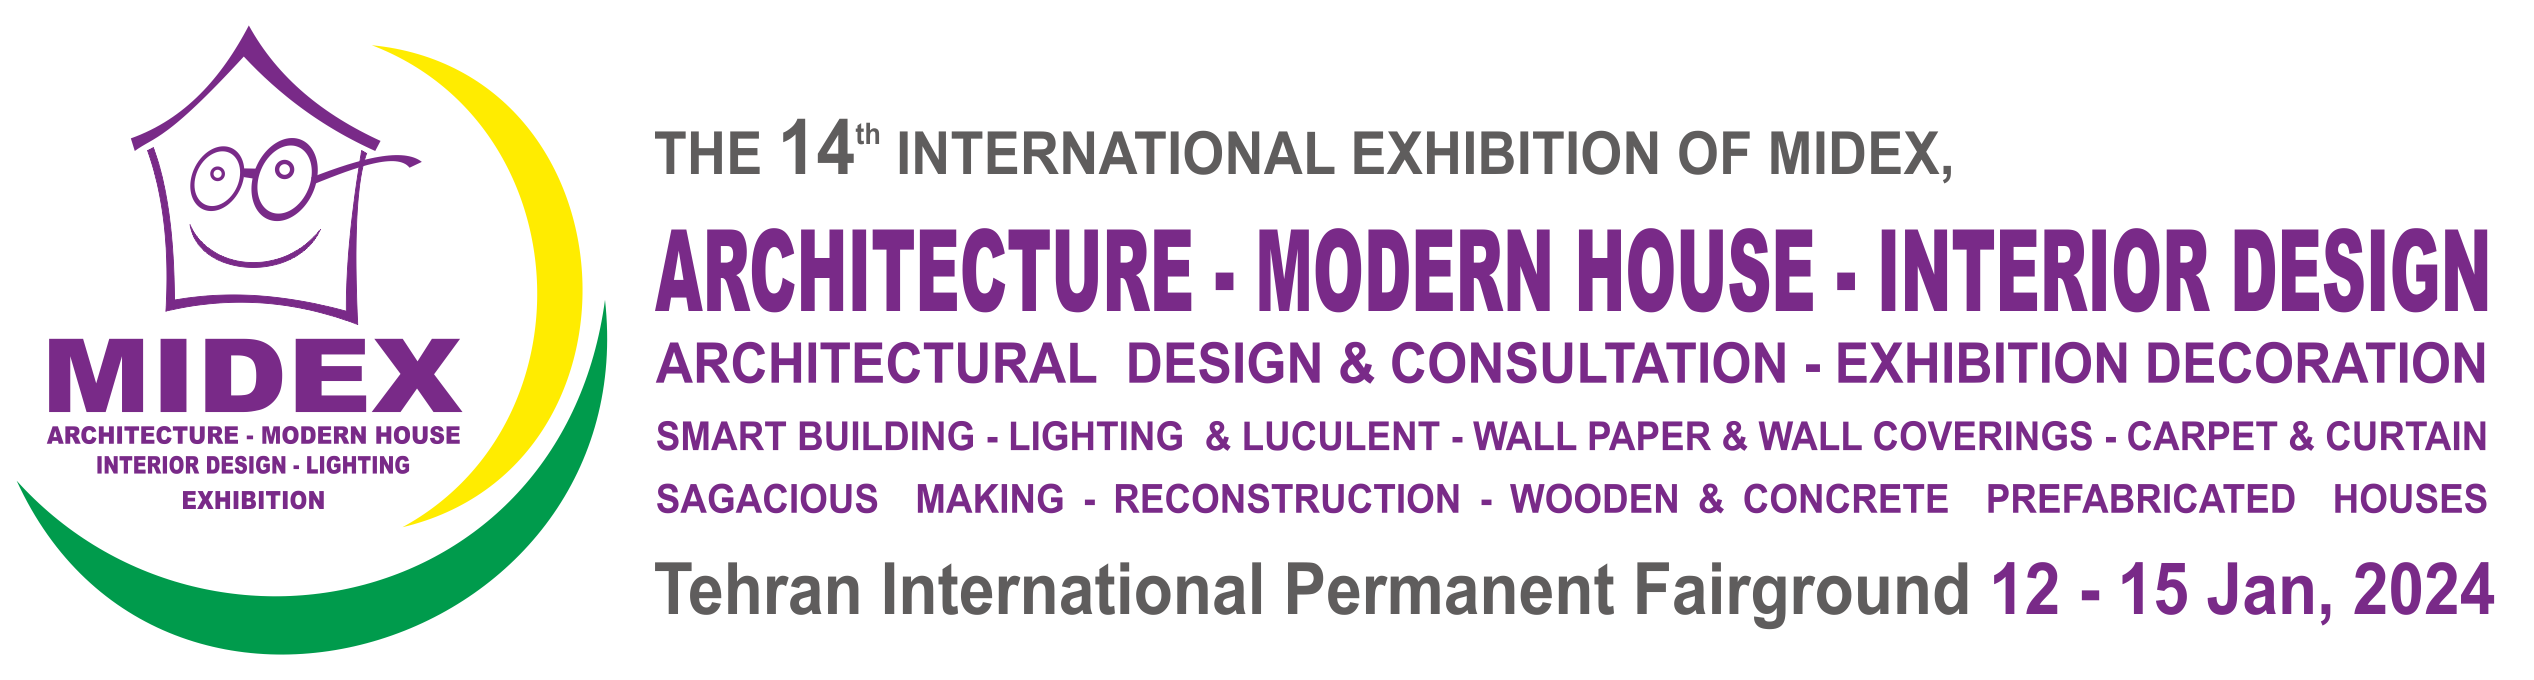 HeaderEn Midex - The 14th International Architecture and Interior Design (MIDEX) Exhibition 2023 in Iran/Tehran